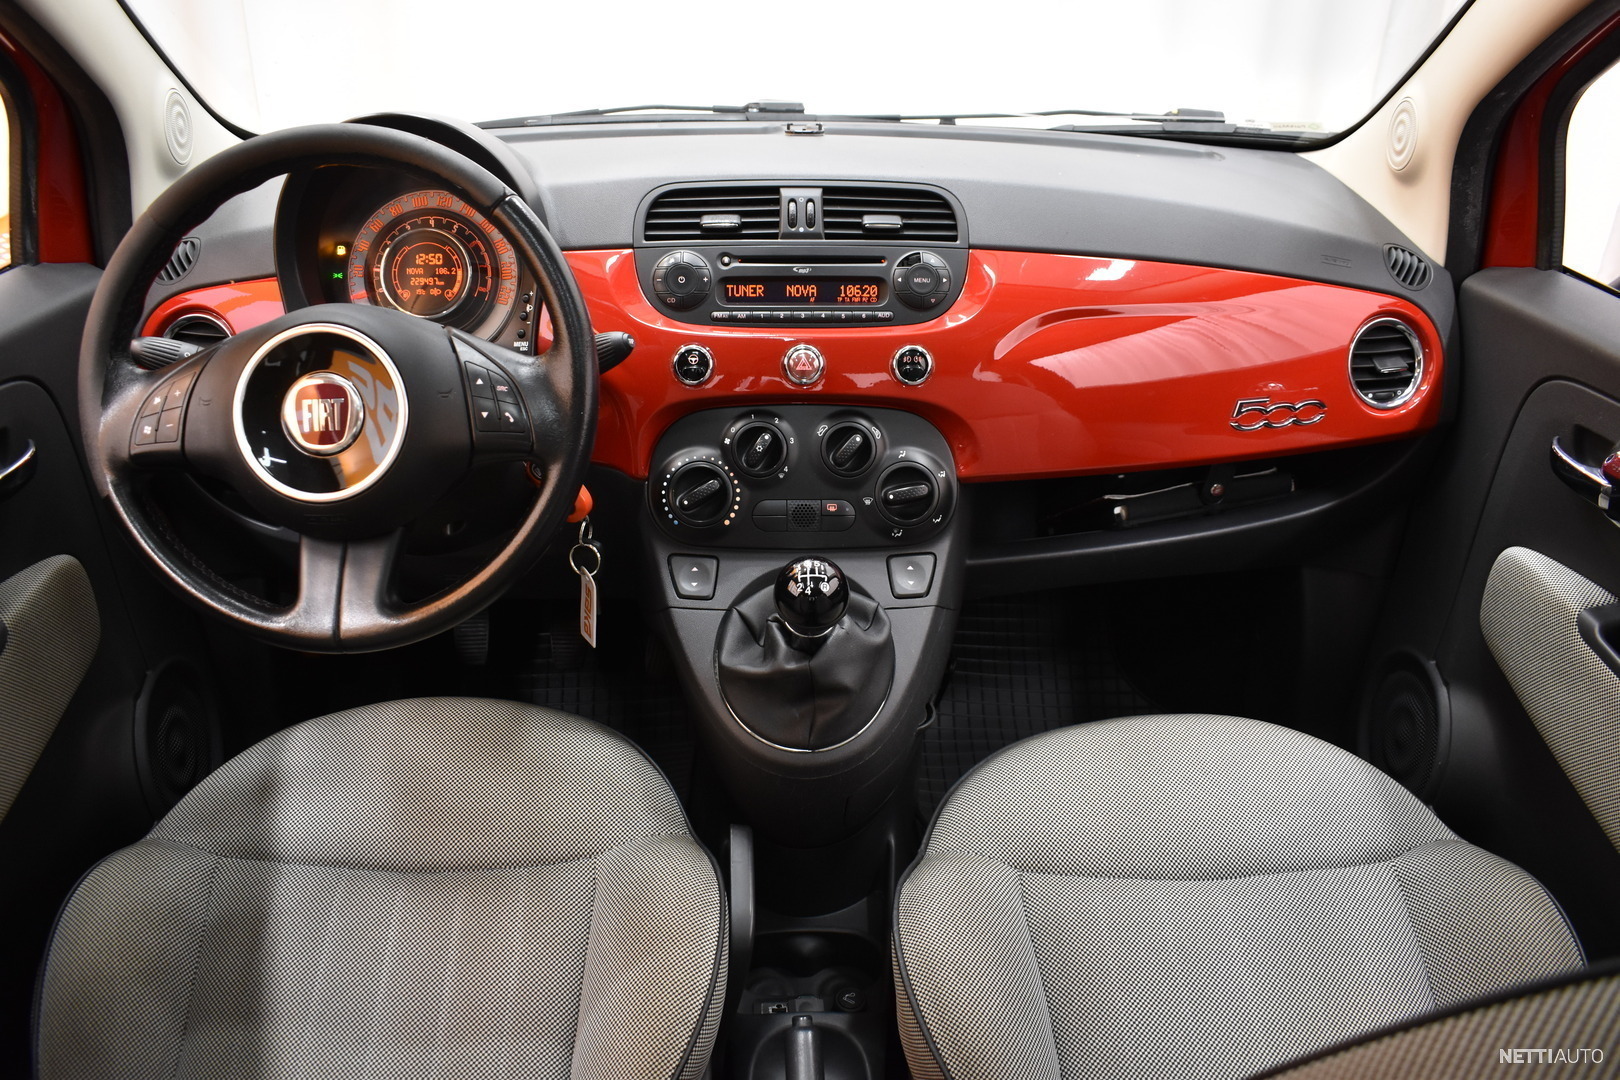 Fiat 500 1,2 69 Lounge # Upea Fiiu uuteen kotiin 2x Renkaat, Aux, USB,  Lohkolämmitin, Sisäpistoke yms #, Myydään, Tori Autot